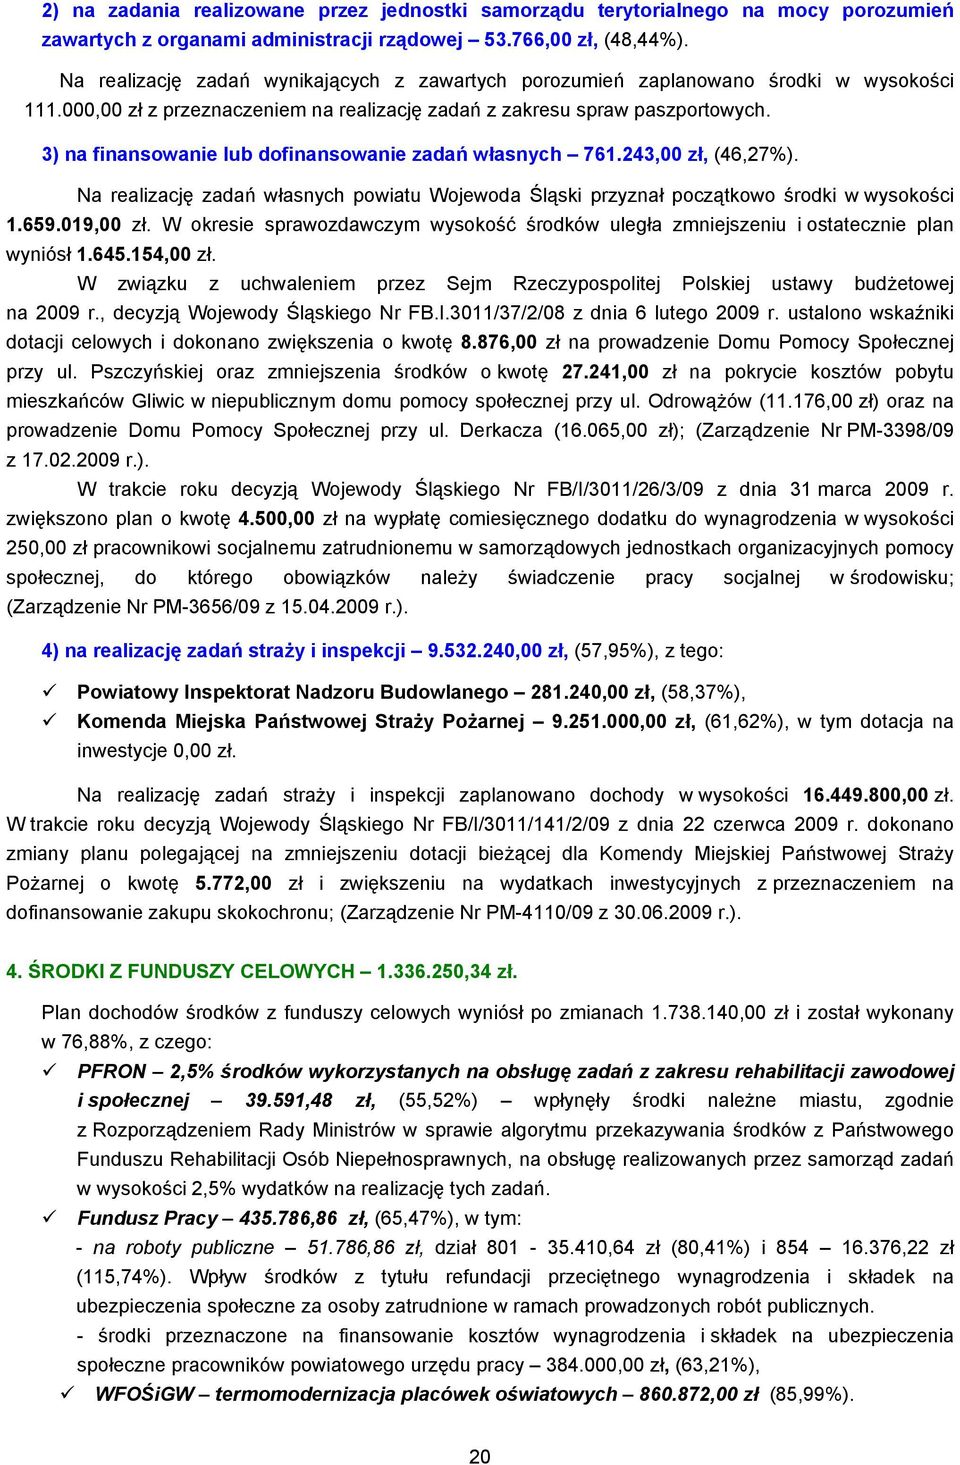 3) na finansowanie lub dofinansowanie zadań własnych 761.243,00 zł, (46,27%). Na realizację zadań własnych powiatu Wojewoda Śląski przyznał początkowo środki w wysokości 1.659.019,00 zł.